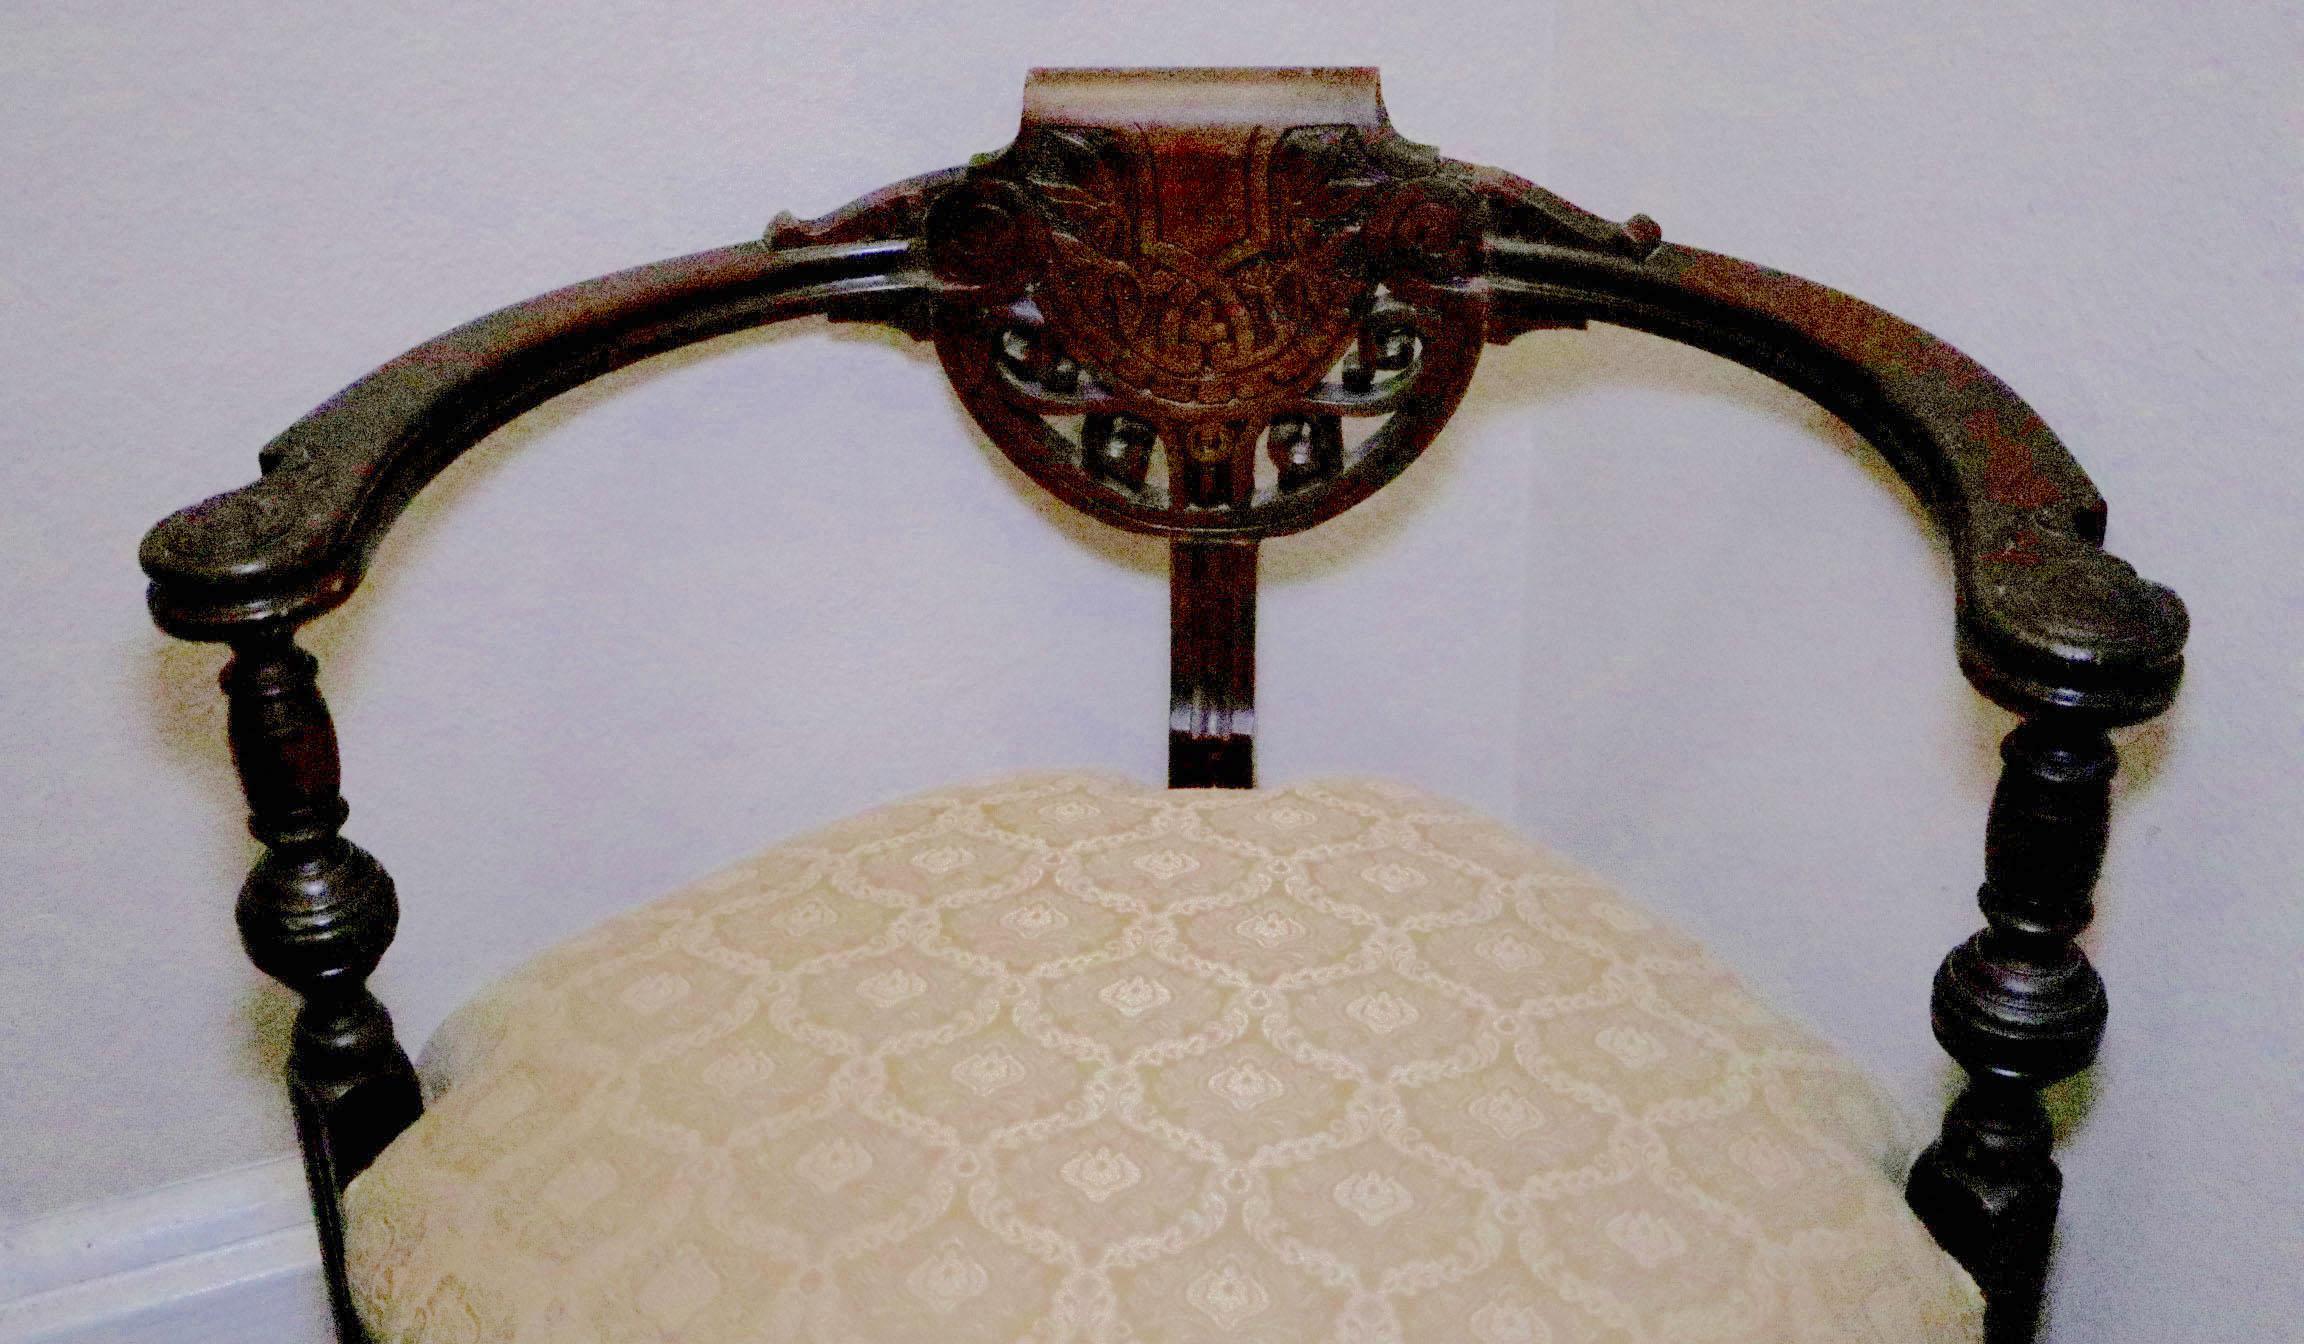 Dieser Eckstuhl im englischen Regency-Stil bietet eine hervorragende Sitzgelegenheit. Er ist aus Nussbaumholz, ca. 1900 - 1925, und ist auch 120 Jahre später noch super stylisch. 
Das Design des zentrierenden Wappens auf dem abgerundeten Rücken und